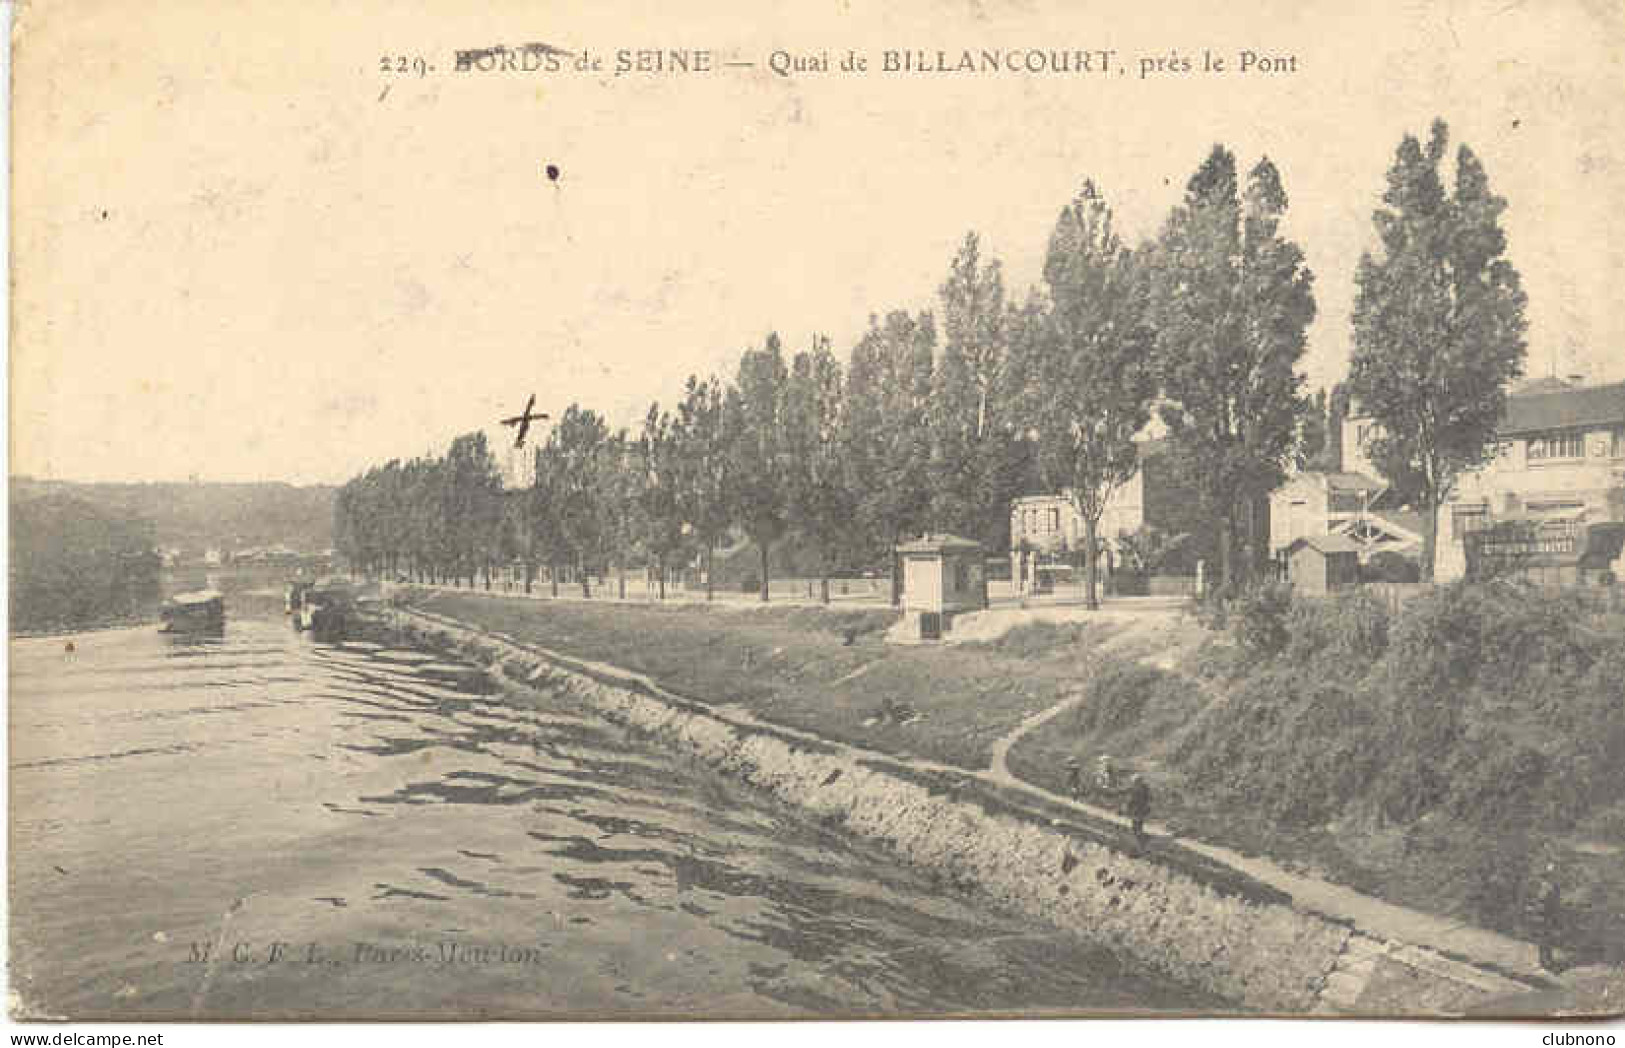 CPA - QUAI DE BILLANCOURT, PRES LE PONT - BORDS DE SEINE - Boulogne Billancourt